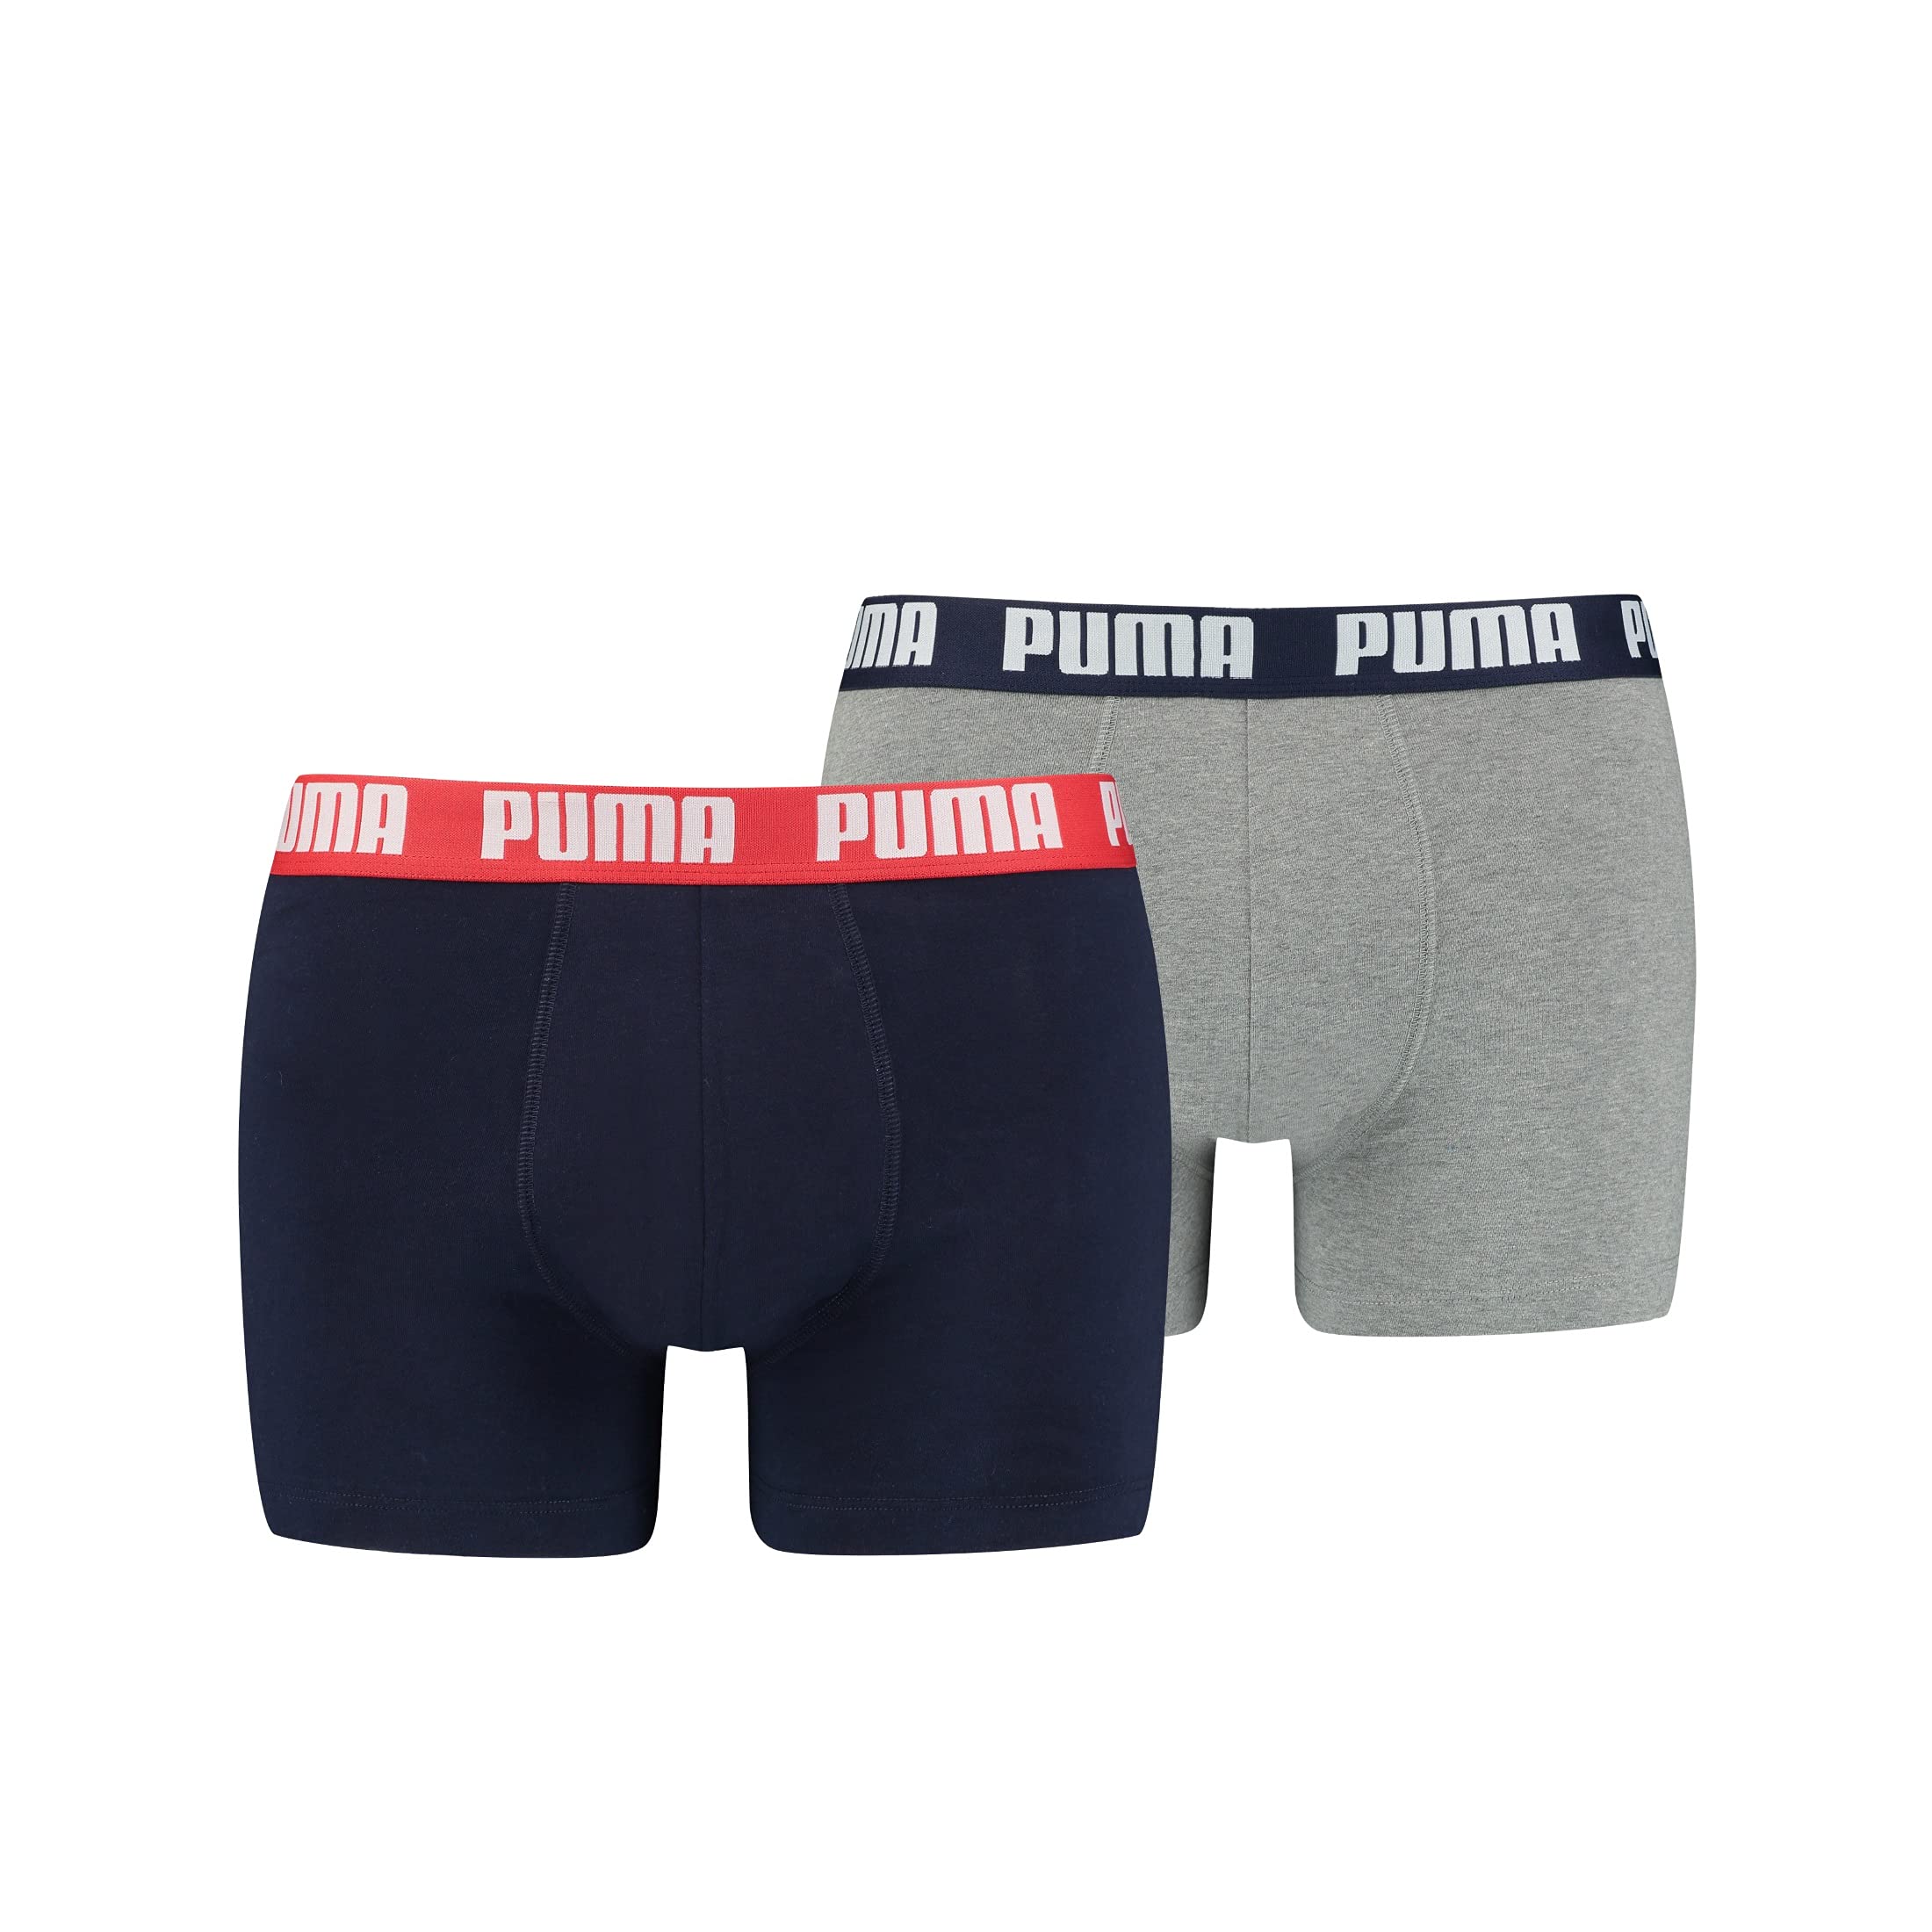 PUMA Herren Grundlæggende kasser Boxer Shorts, Blue / Grey Melange, L EU